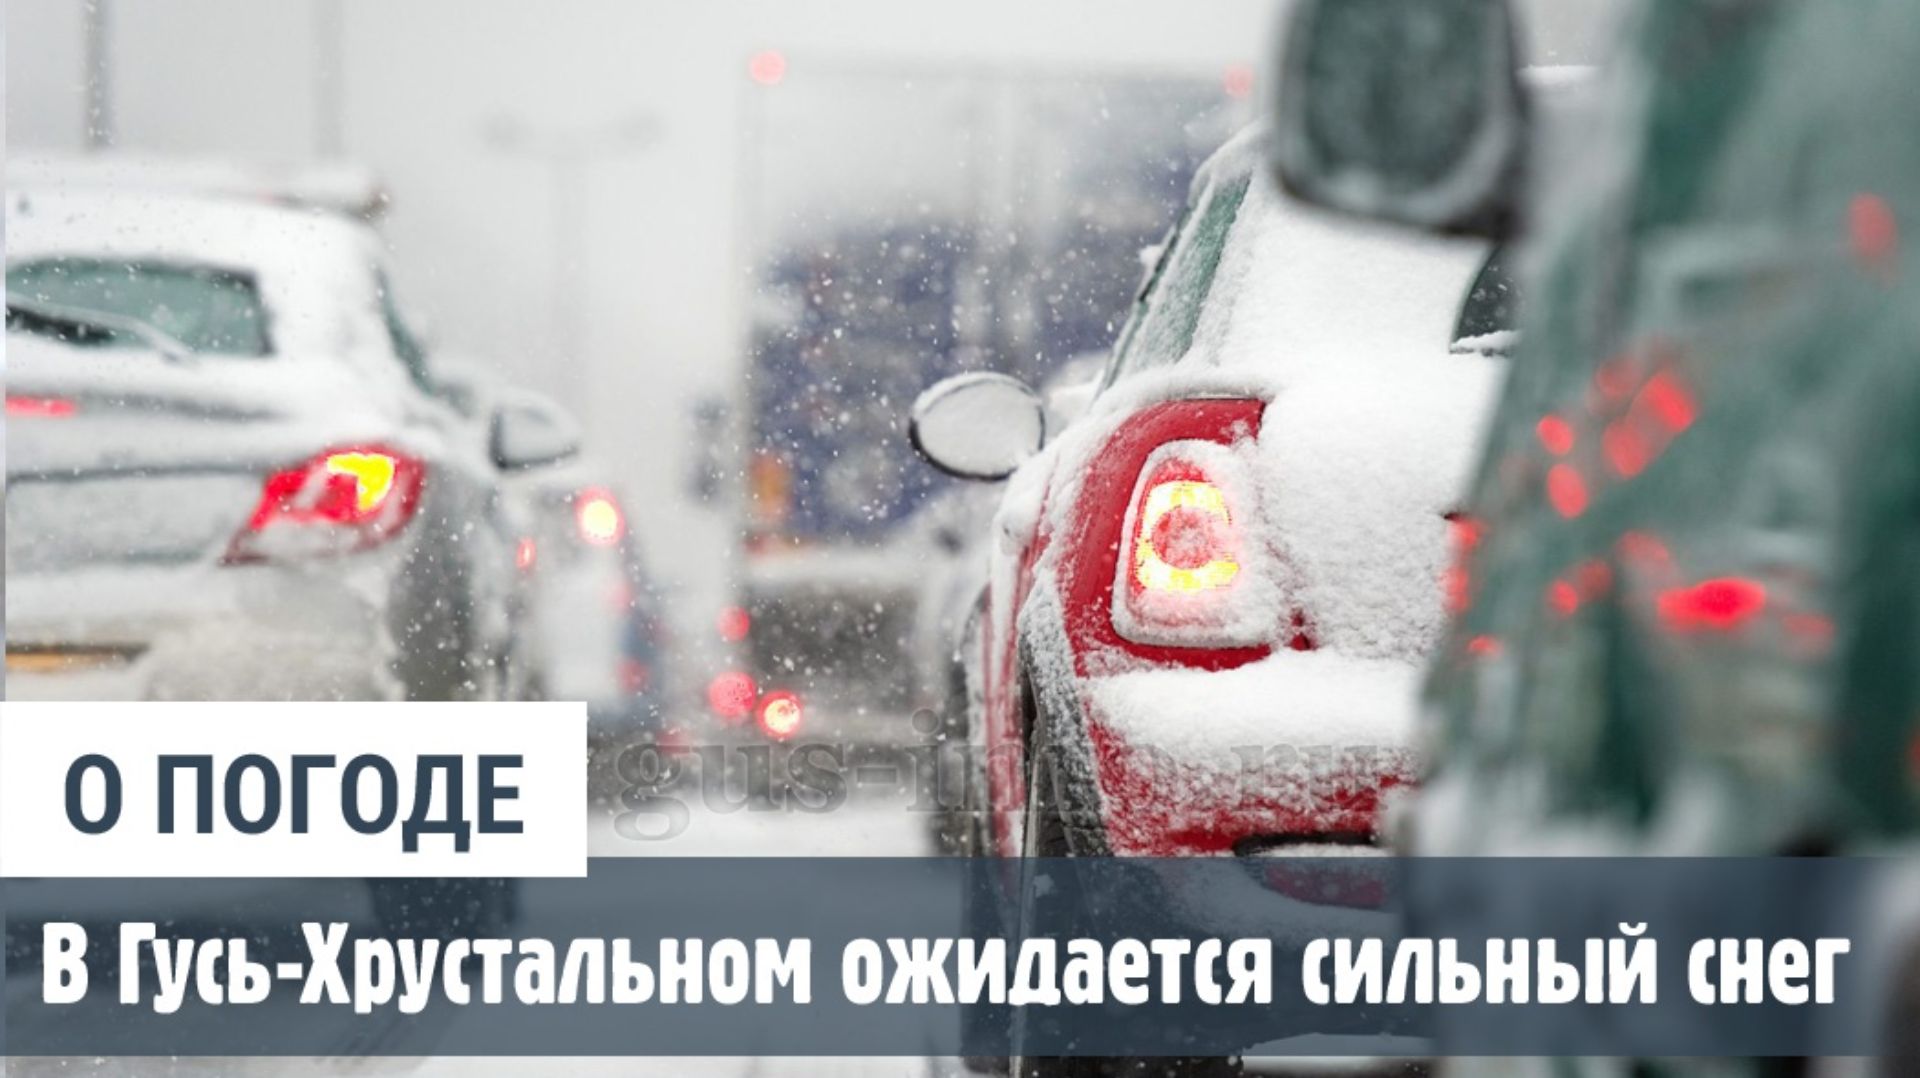 Главное управление МЧС России информирует о неблагоприятных метеоявлениях, прогнозируемых на 07-08 февраля